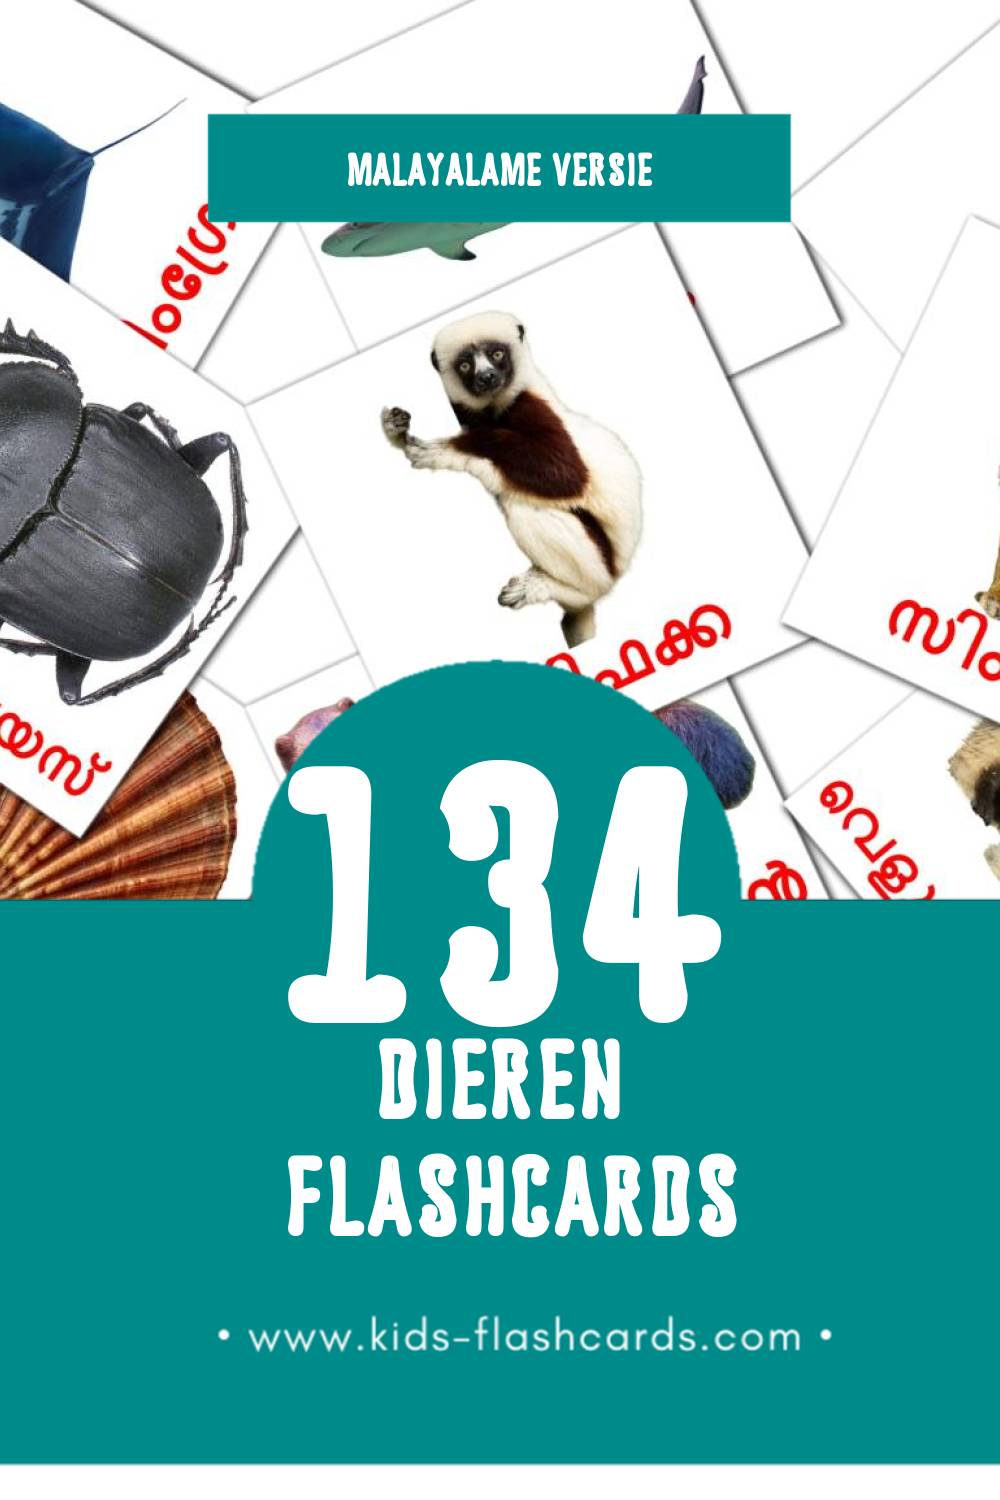 Visuele മൃഗങ്ങൾ Flashcards voor Kleuters (134 kaarten in het Malayalam)